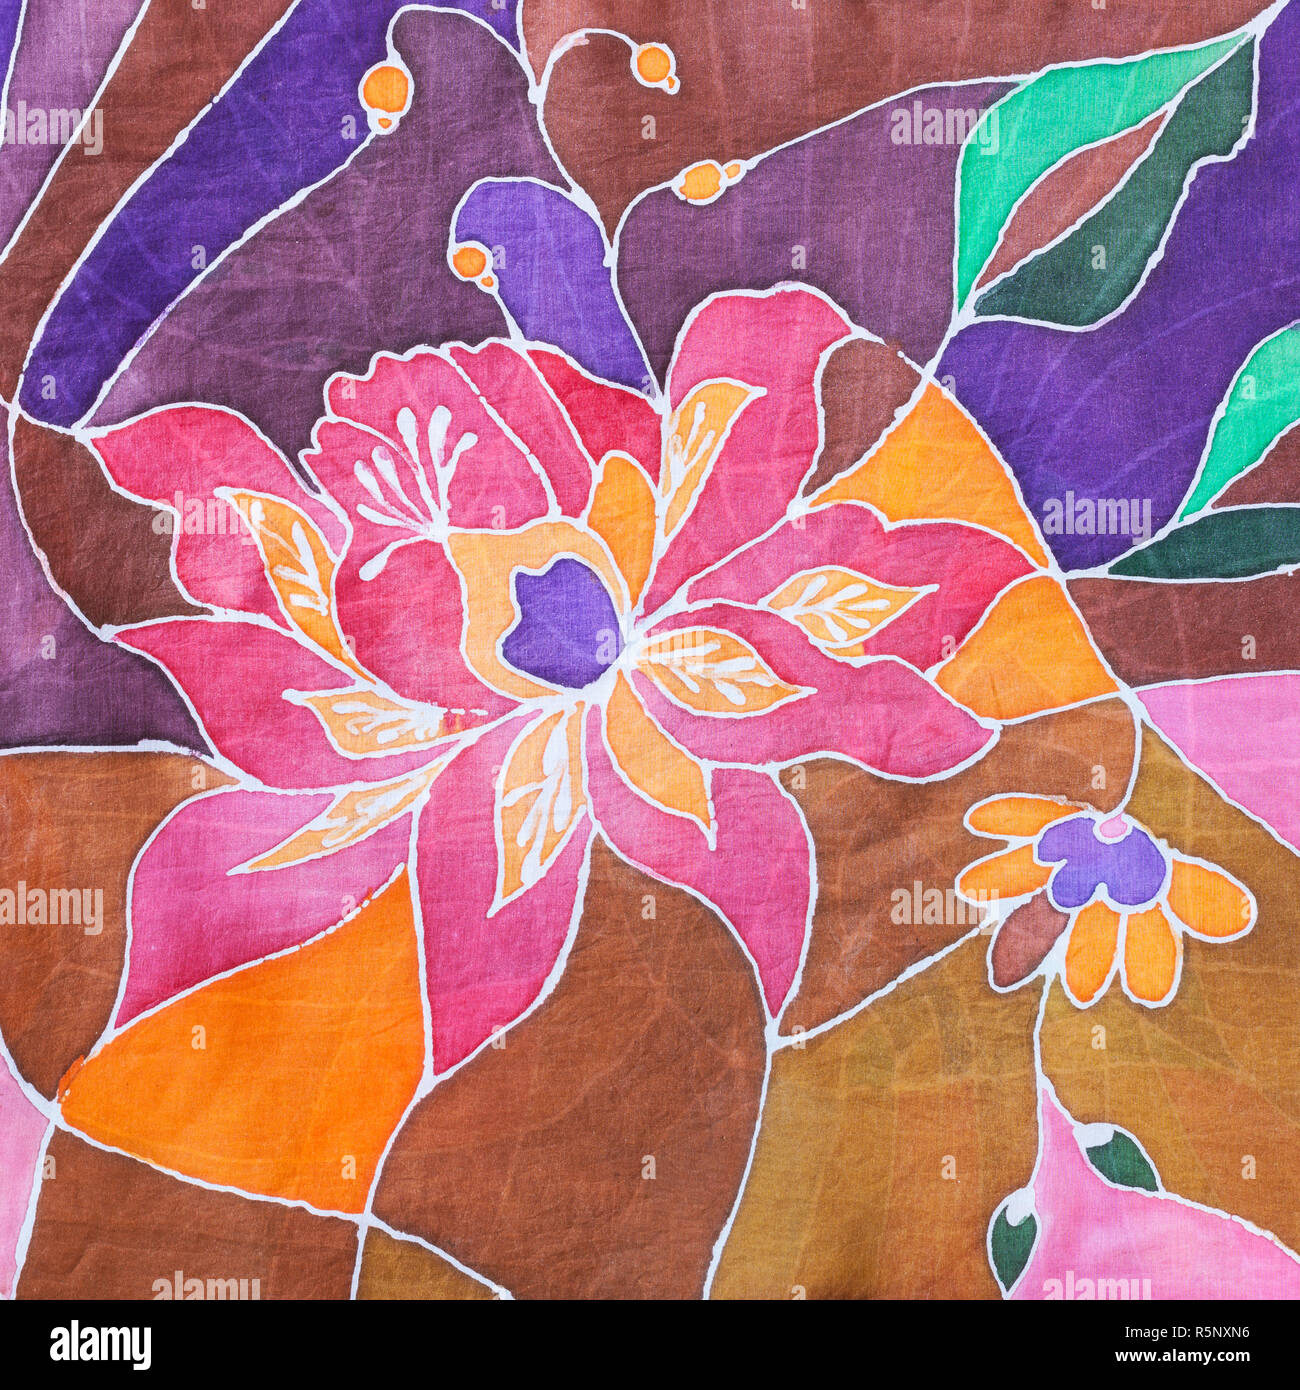 Fleur stylisée peinte à la main sur soie foulard batik Banque D'Images